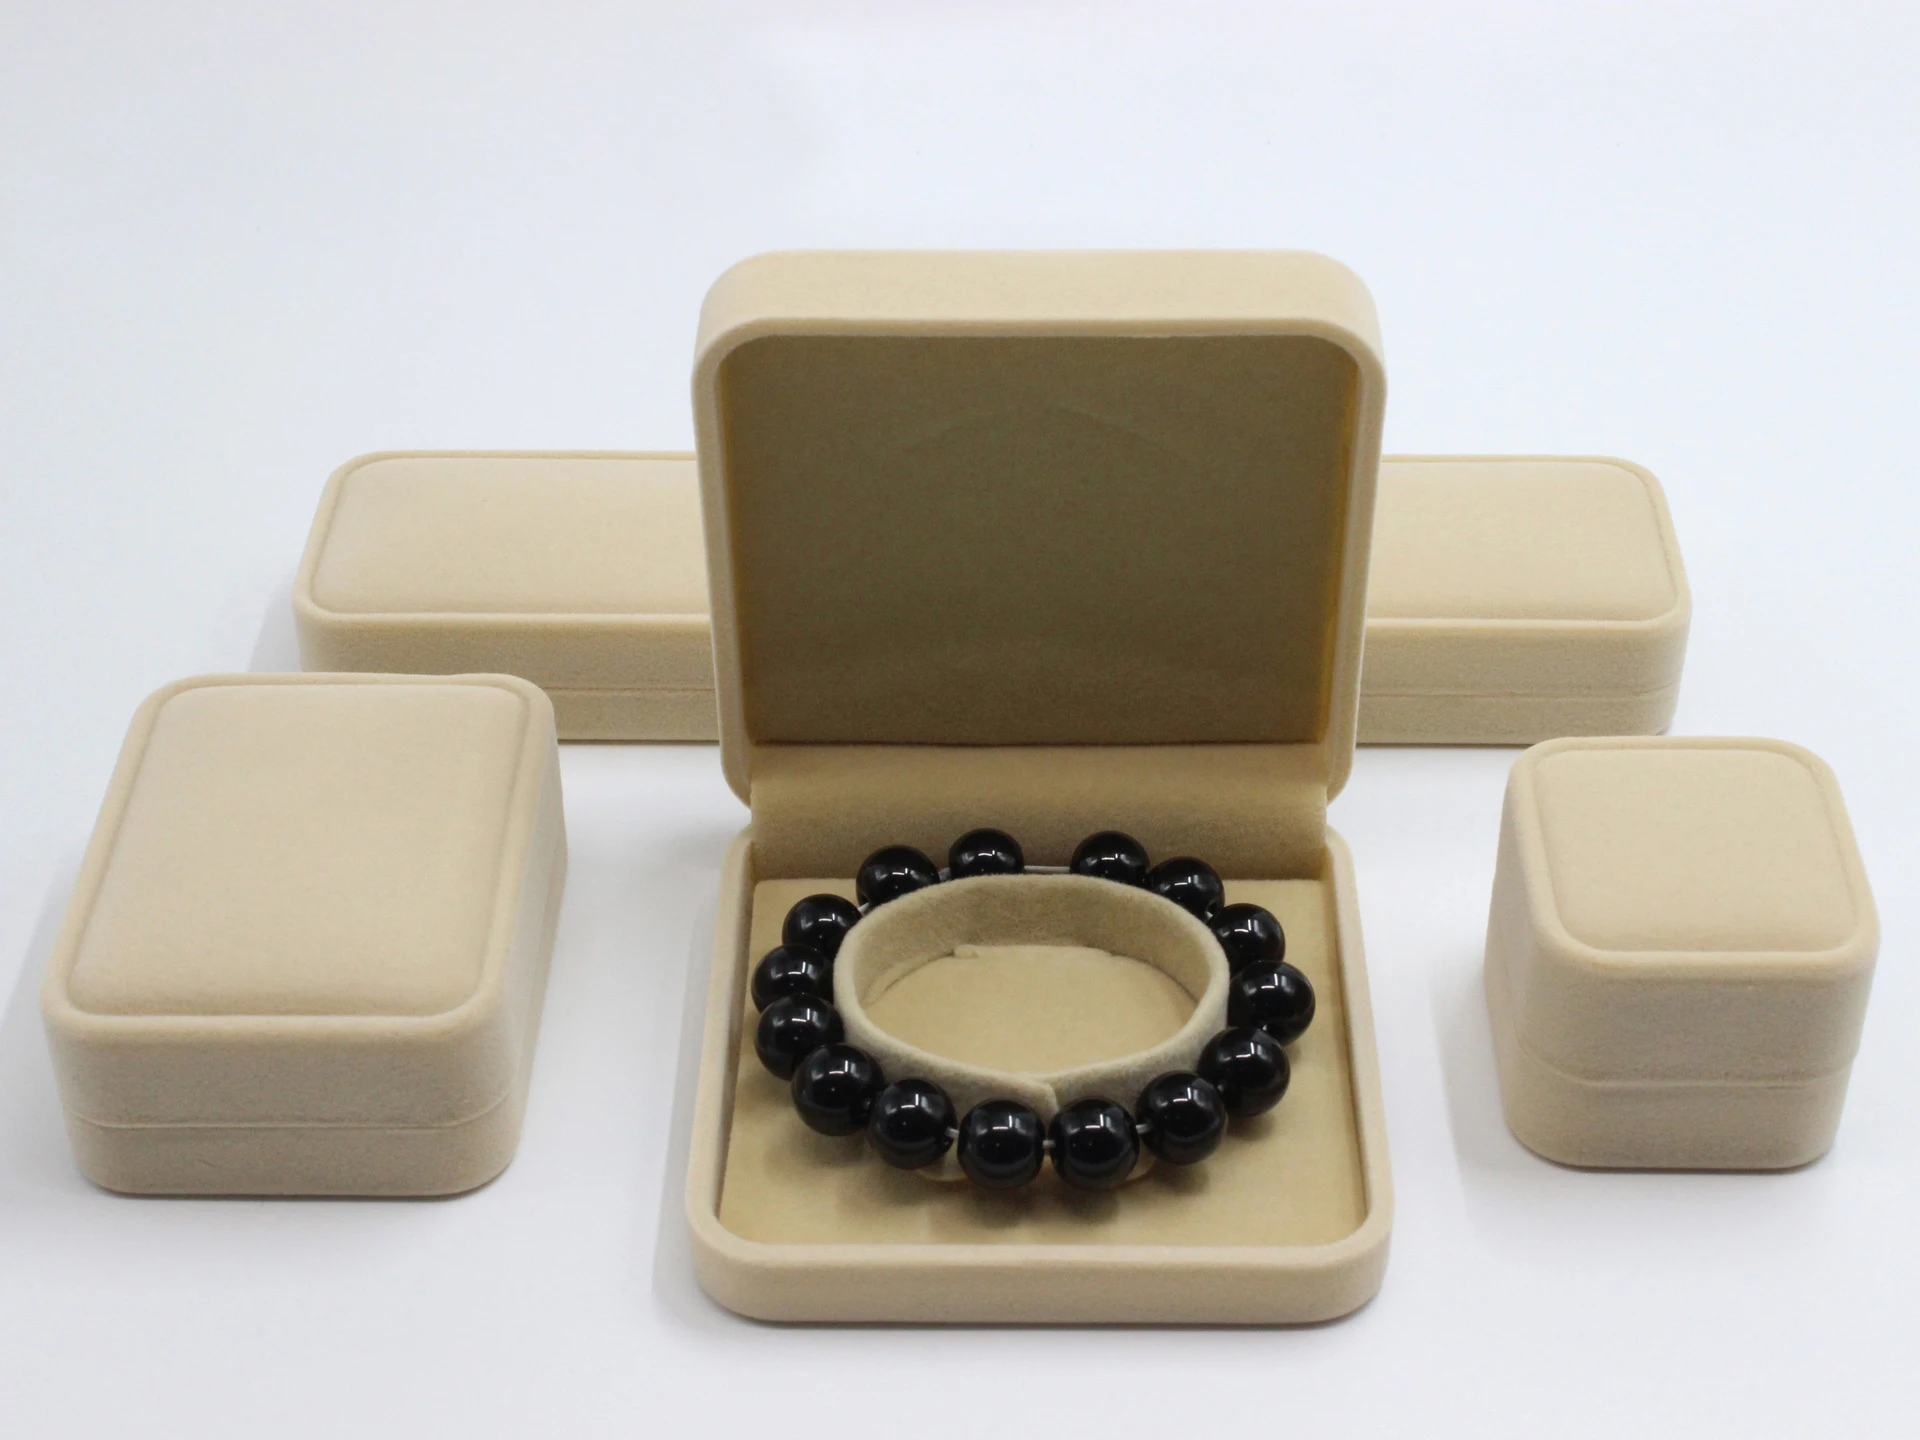 Роскошное бархатное кольцо подвеска ожерелье браслет Ювелирная Подарочная коробка набор футляр для хранения подарочные упаковочные коробки для ювелирных украшений